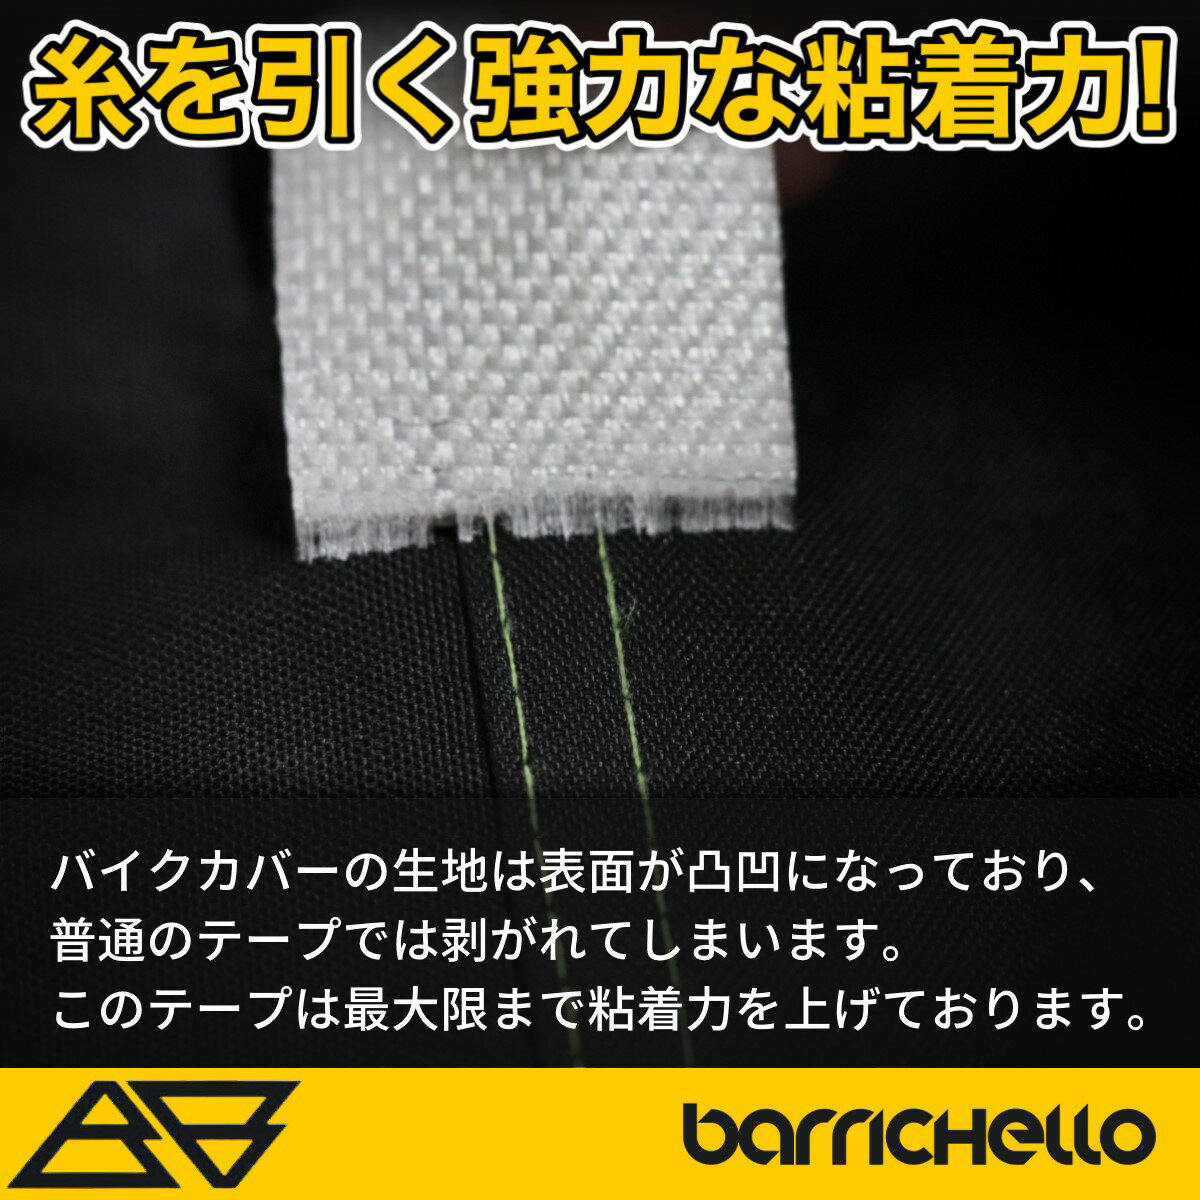 【送料無料】Barrichello(バリチェロ)バイクカバー 補修用シームテープ 防水 雨漏り対策 強力粘着 3